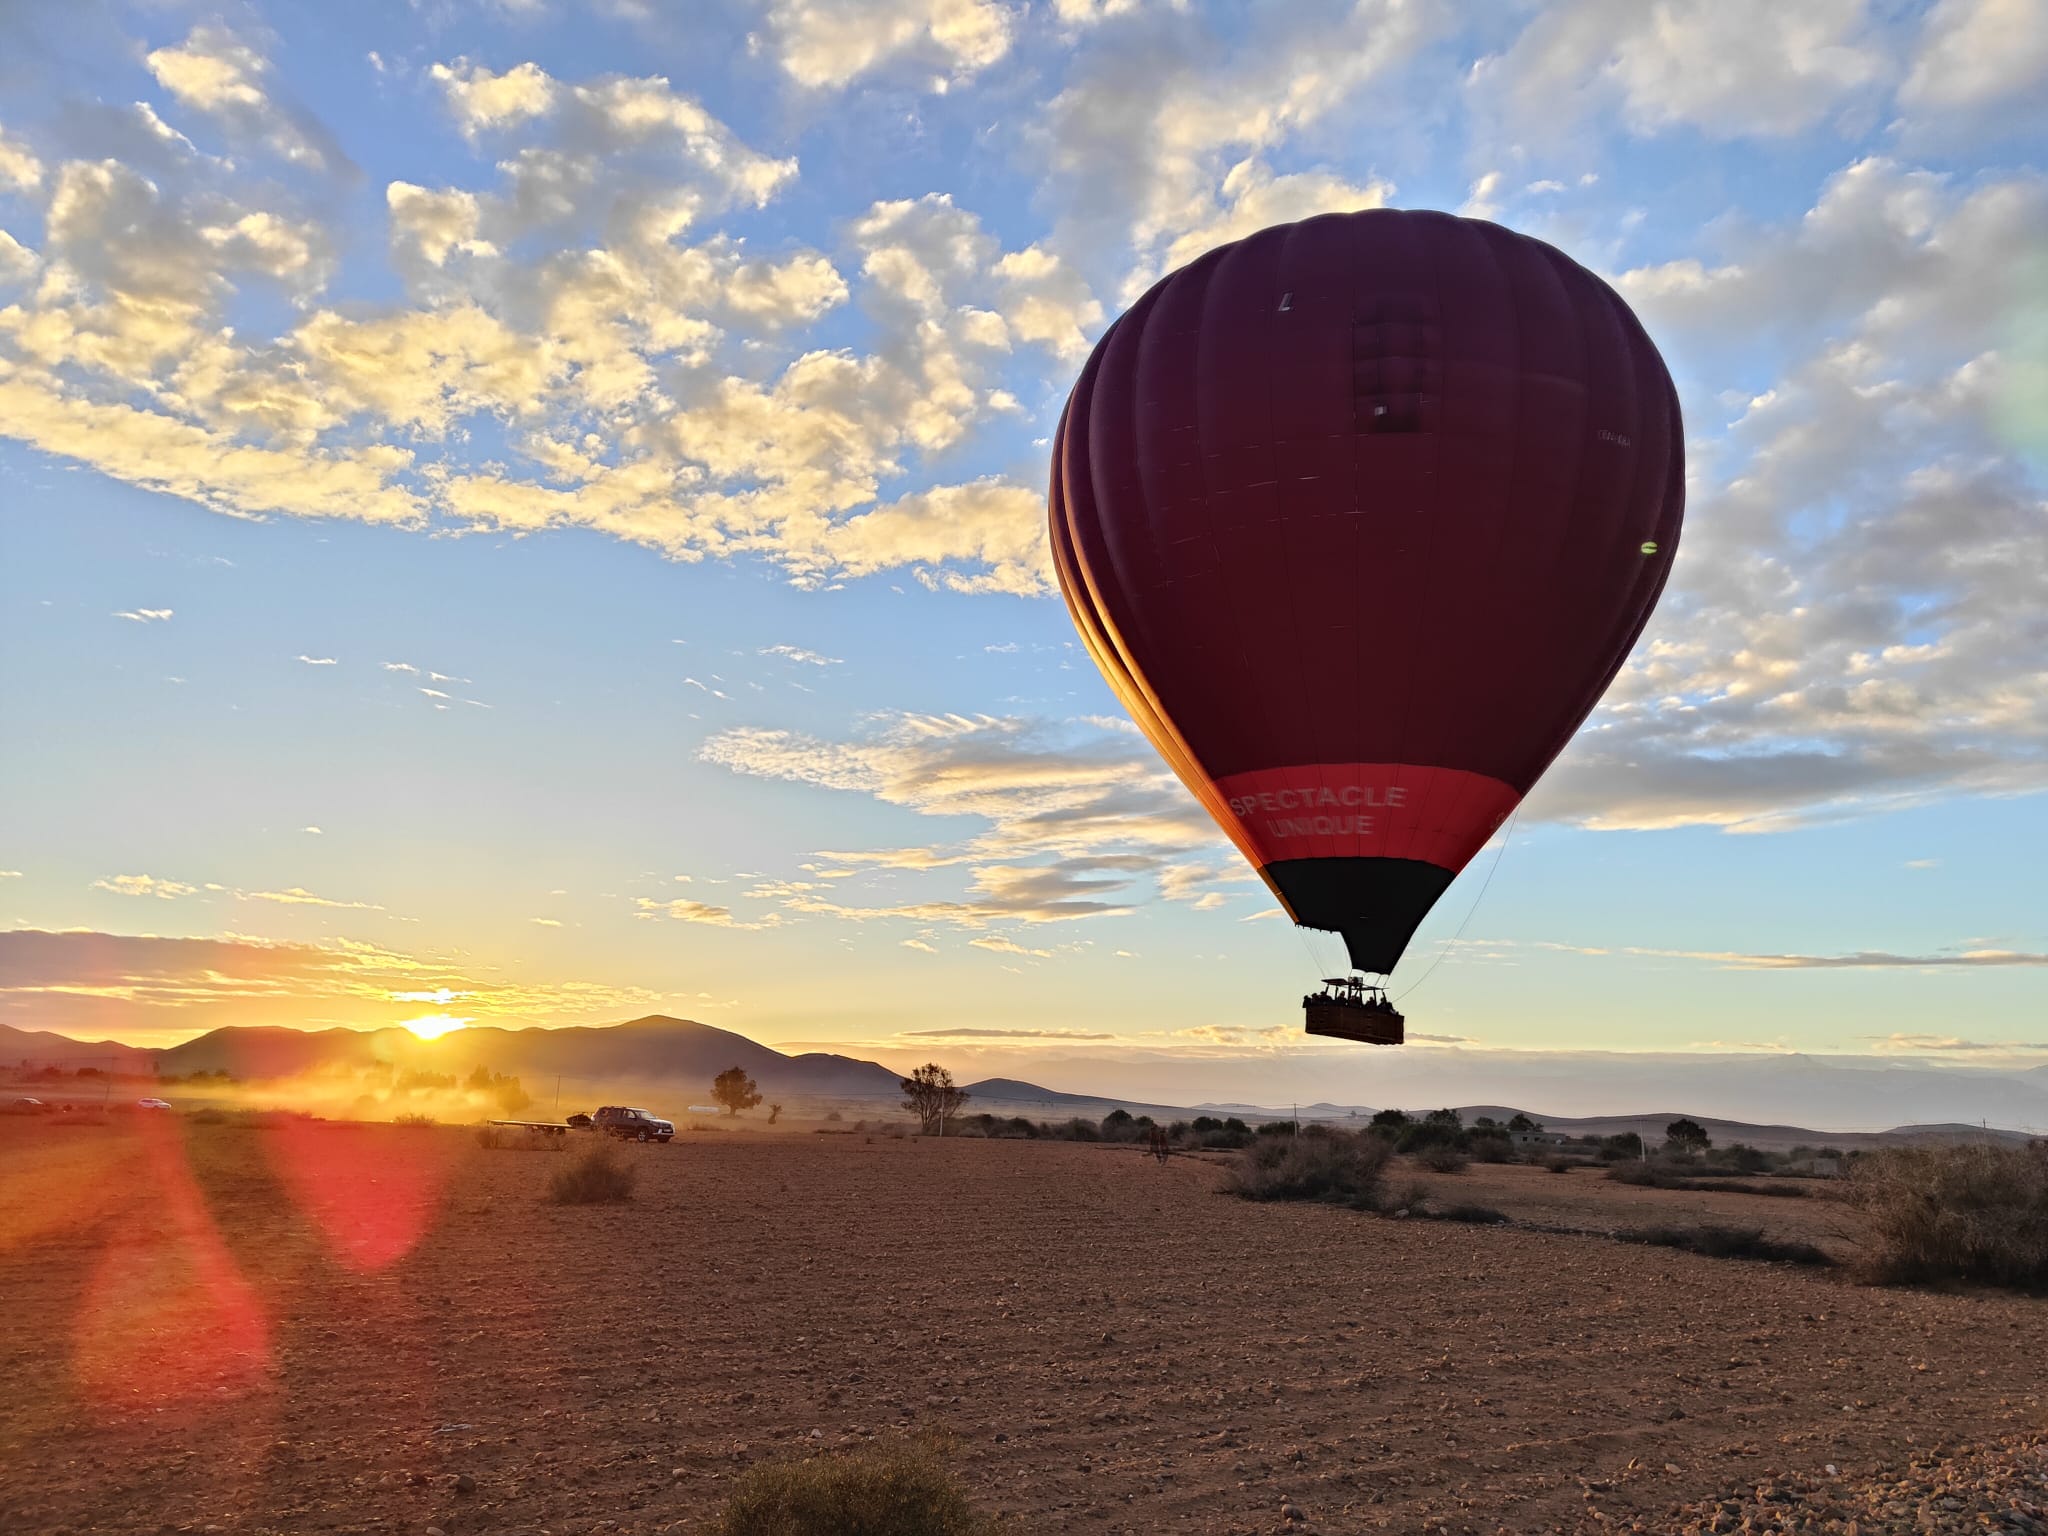 Une montgolfière survole le désert marocain.